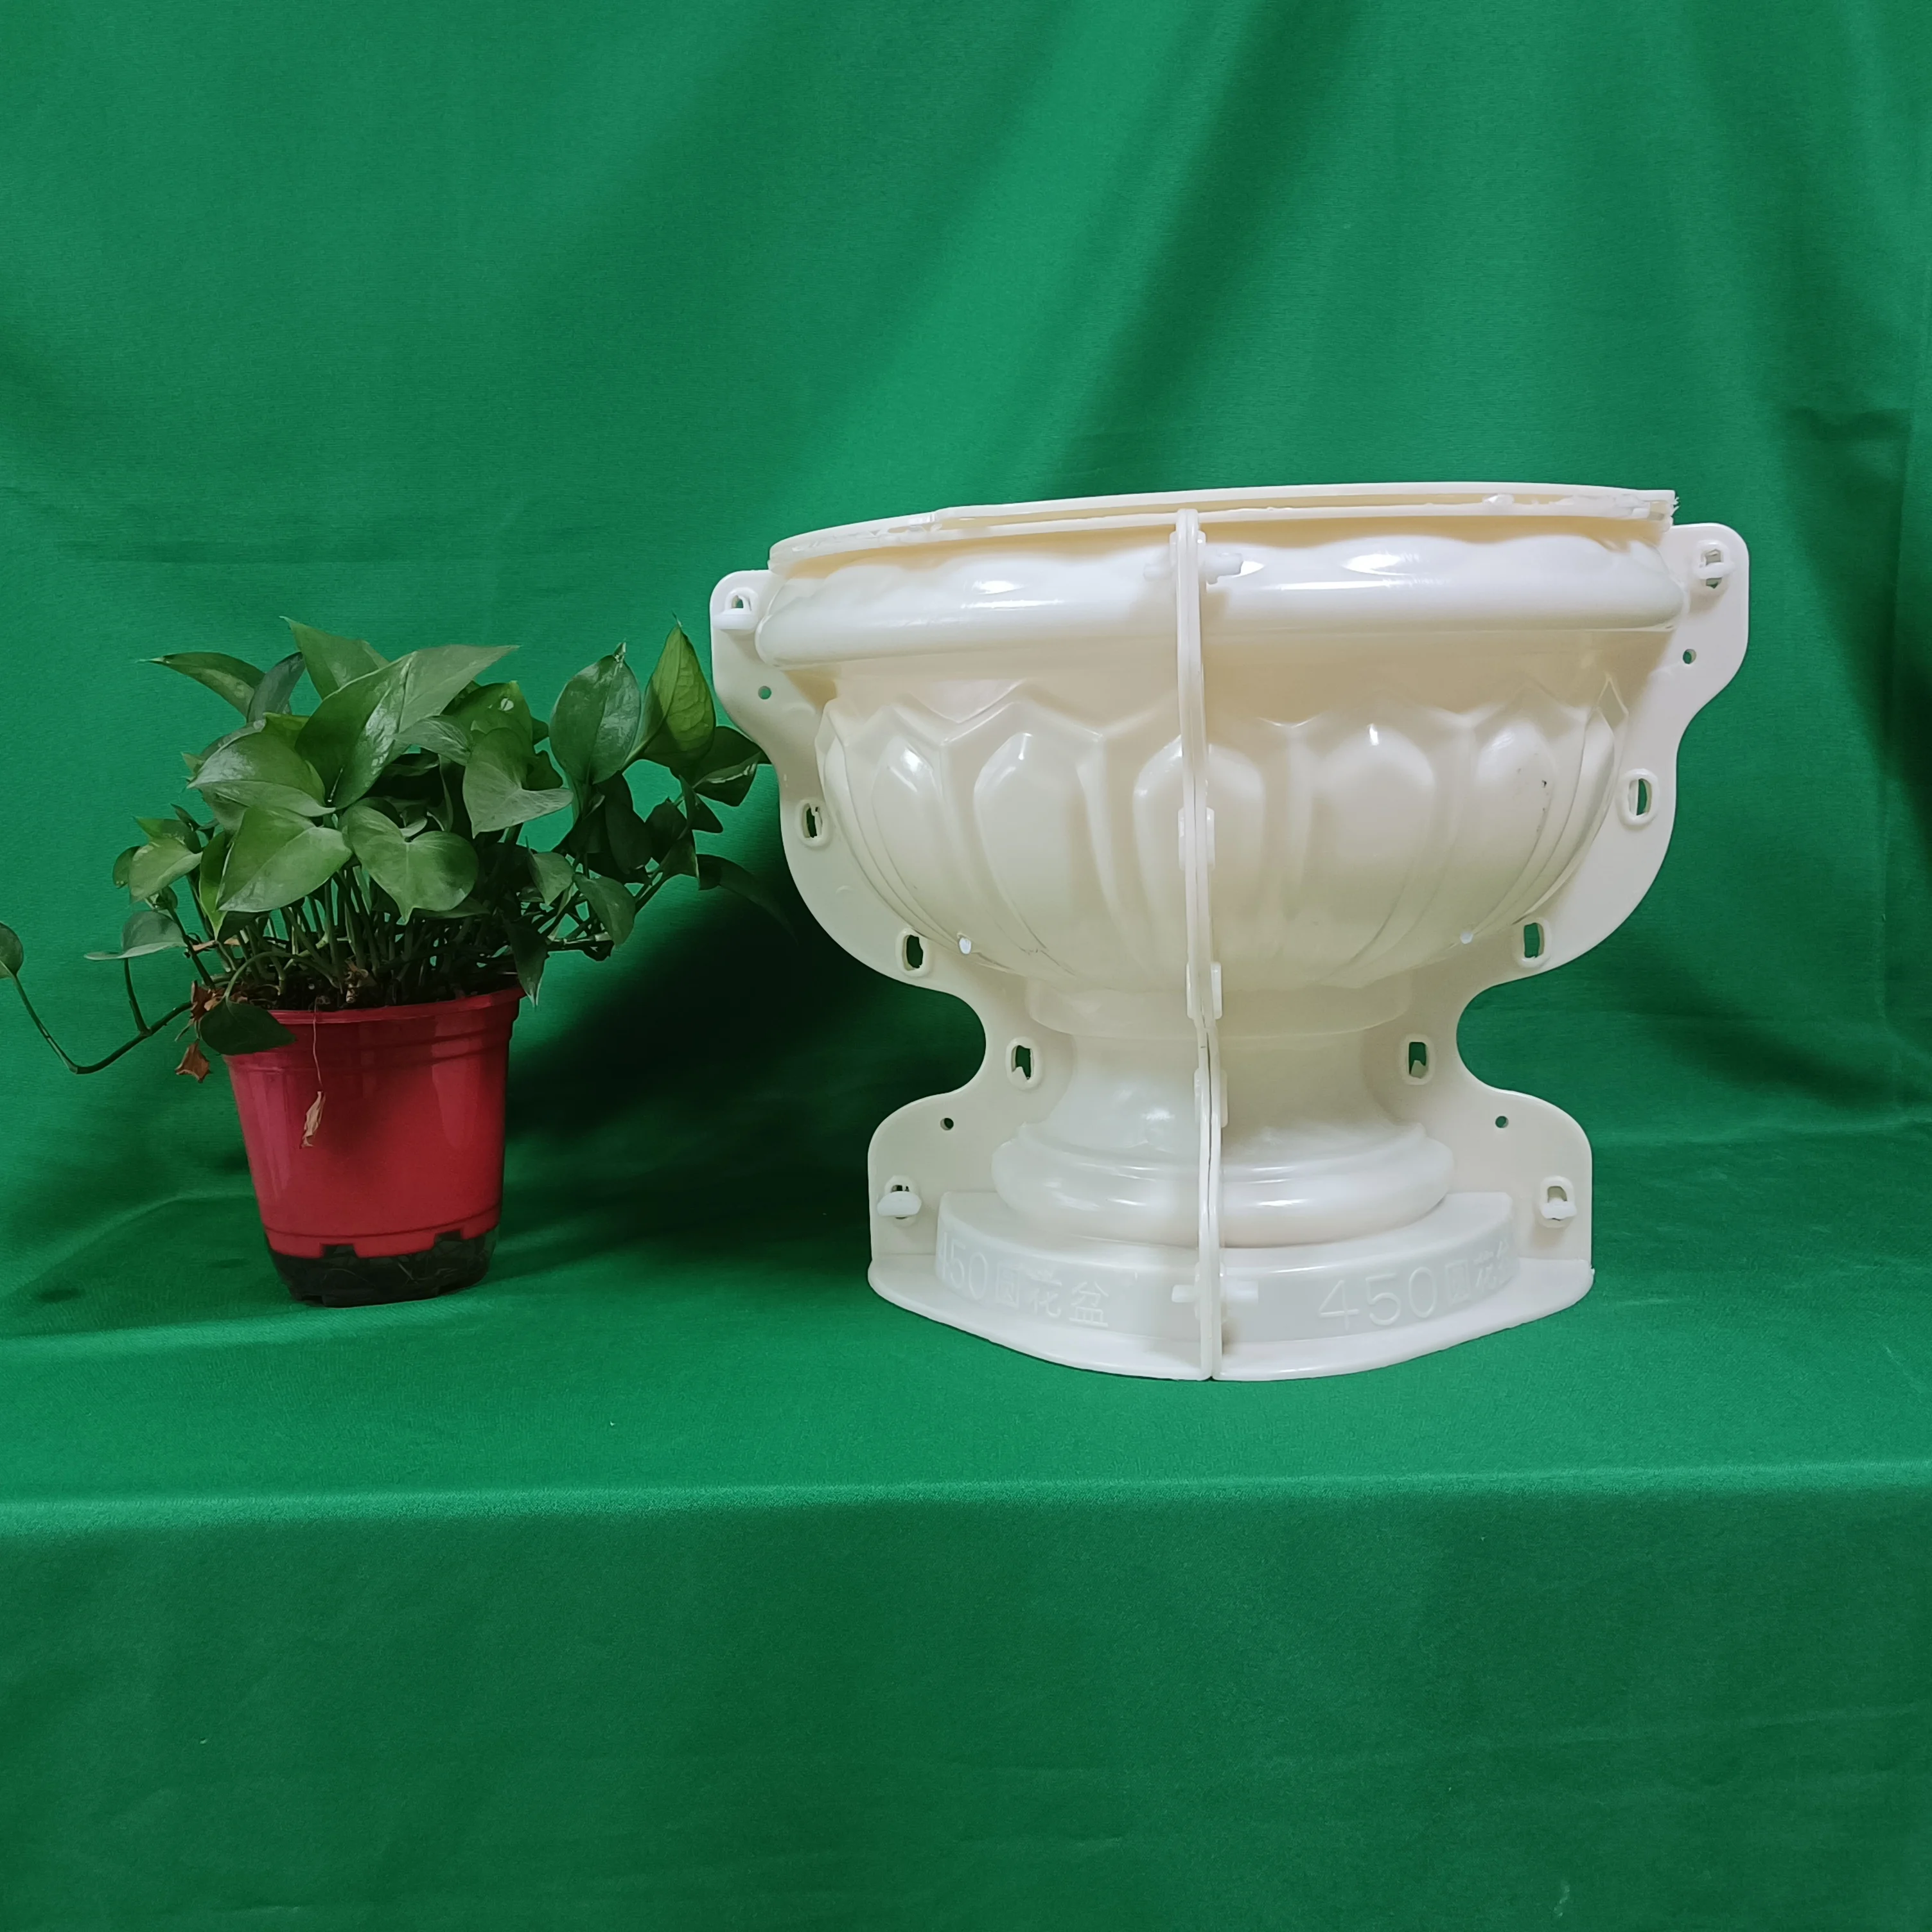 D45cm Reazone ABS high quality plastic precast concrete flower pot planter molds for sale images - 6